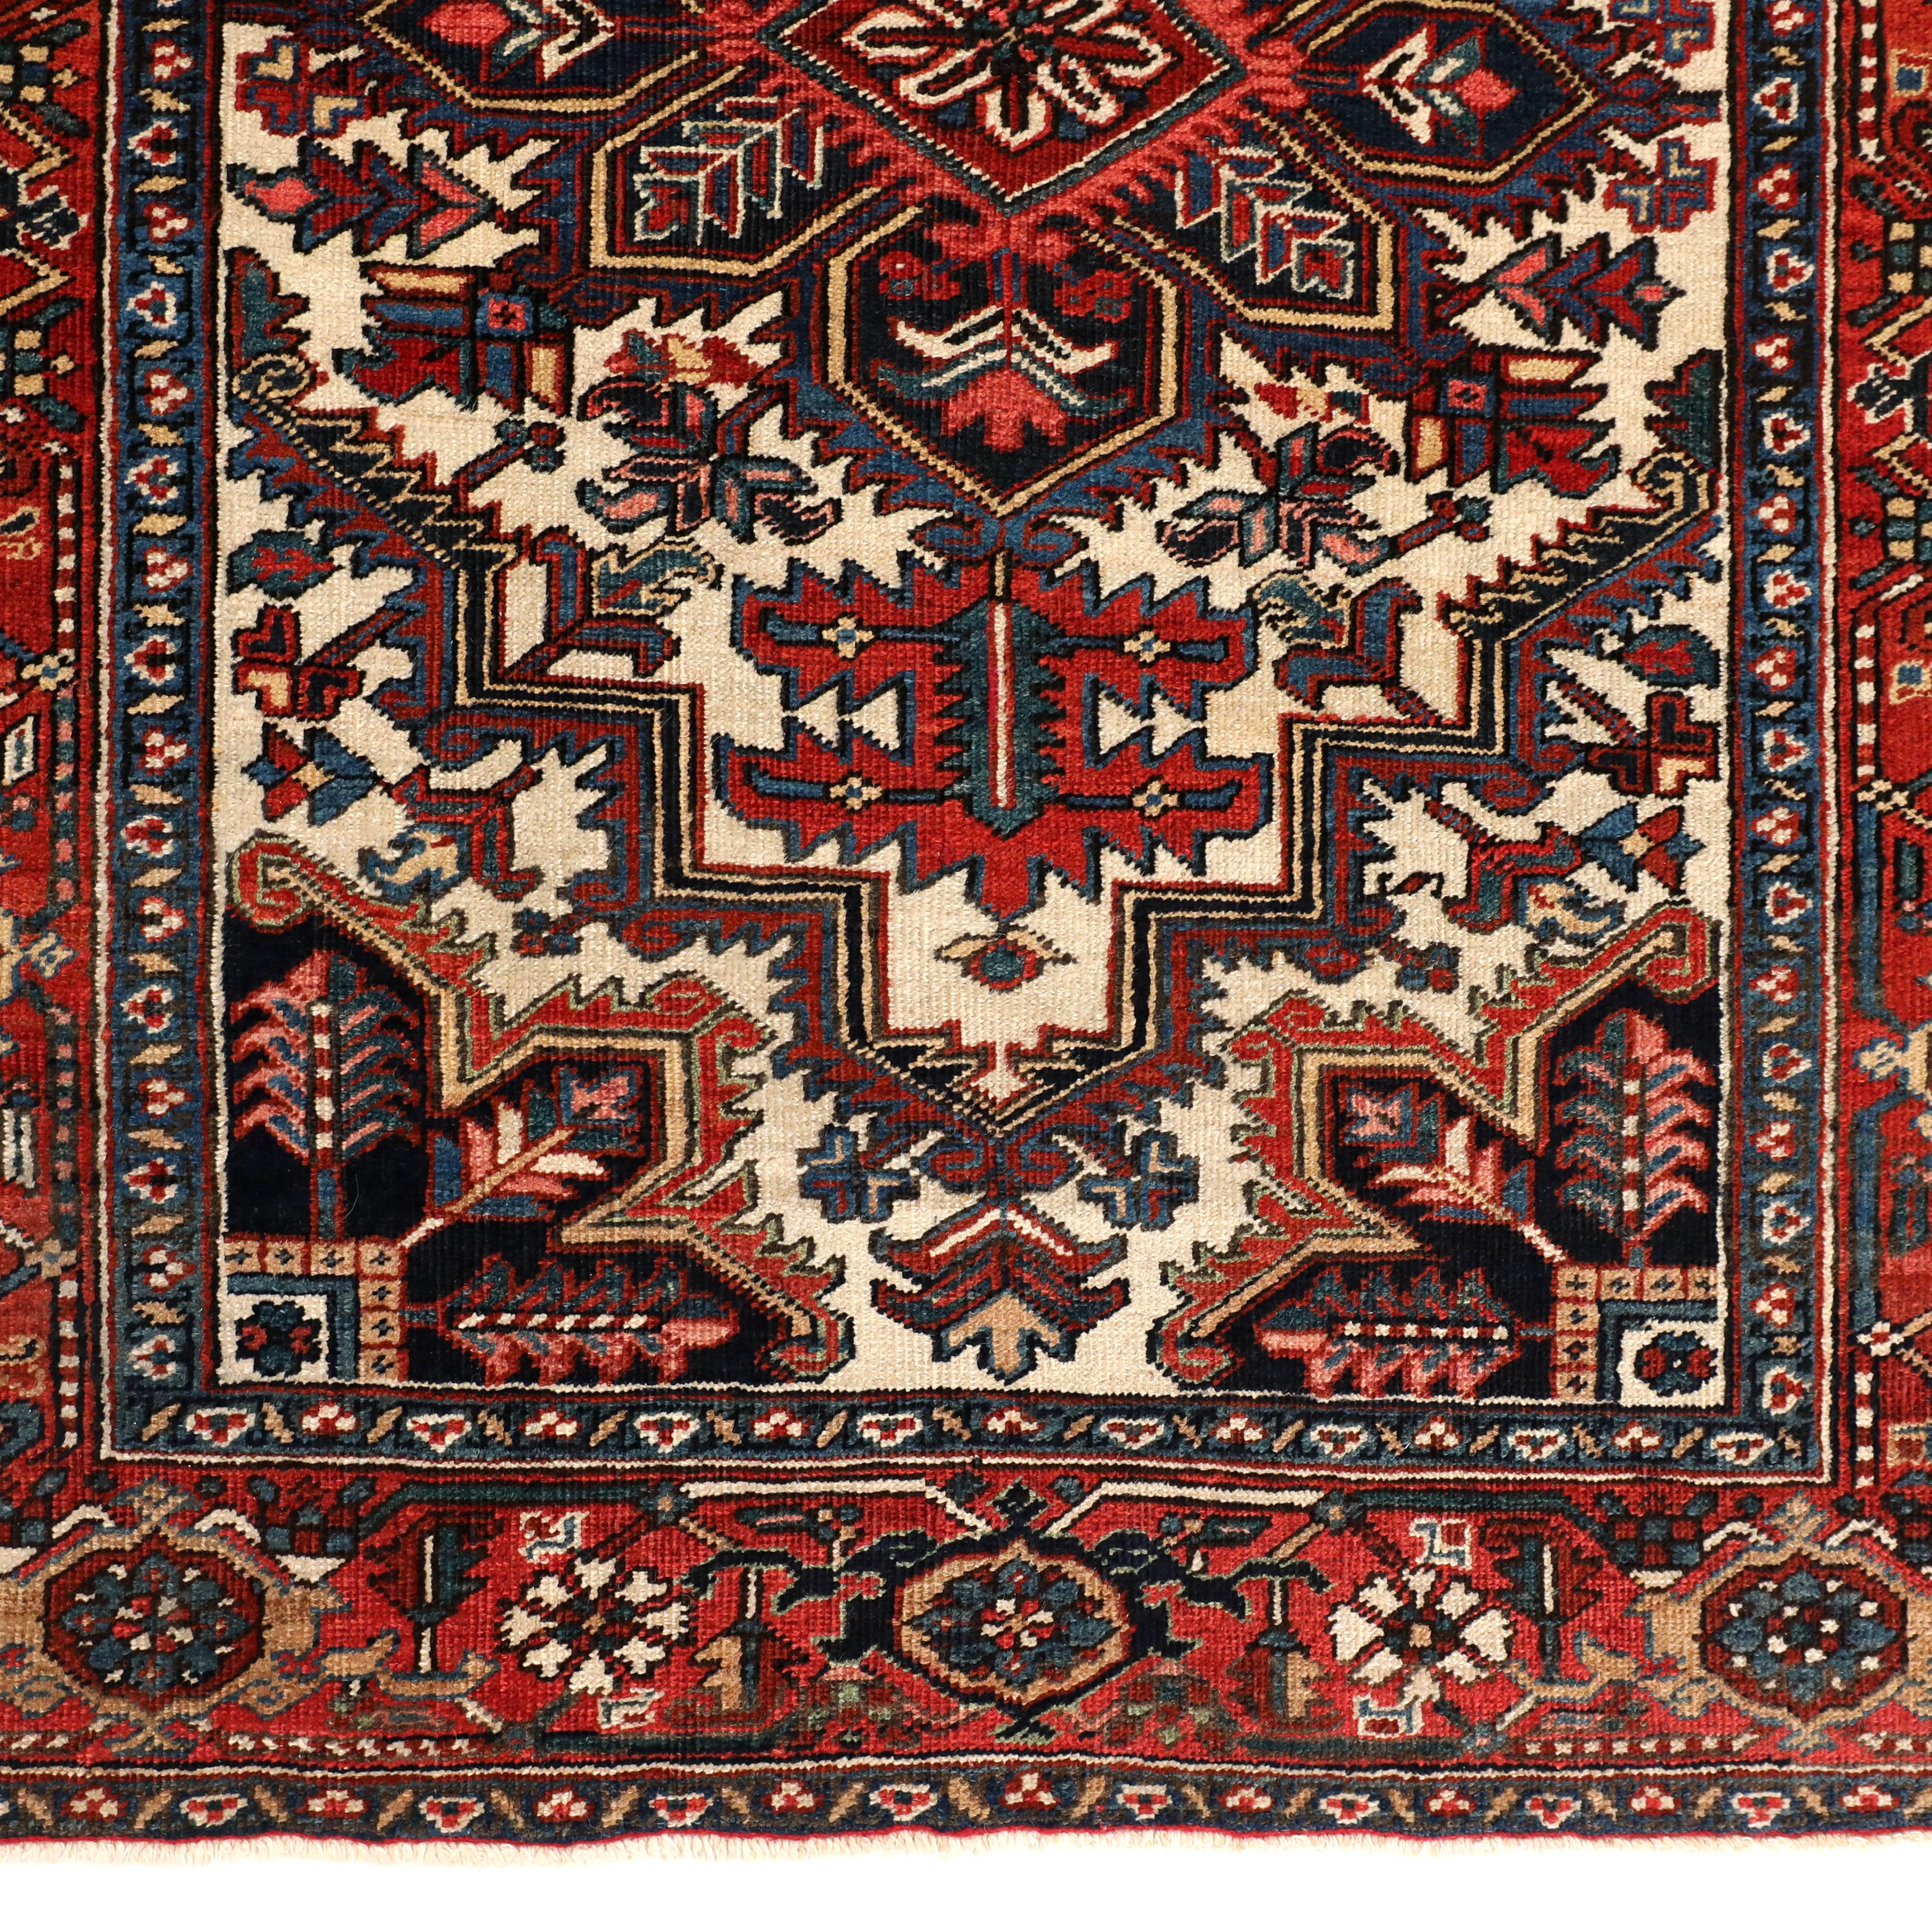 1920s carpet